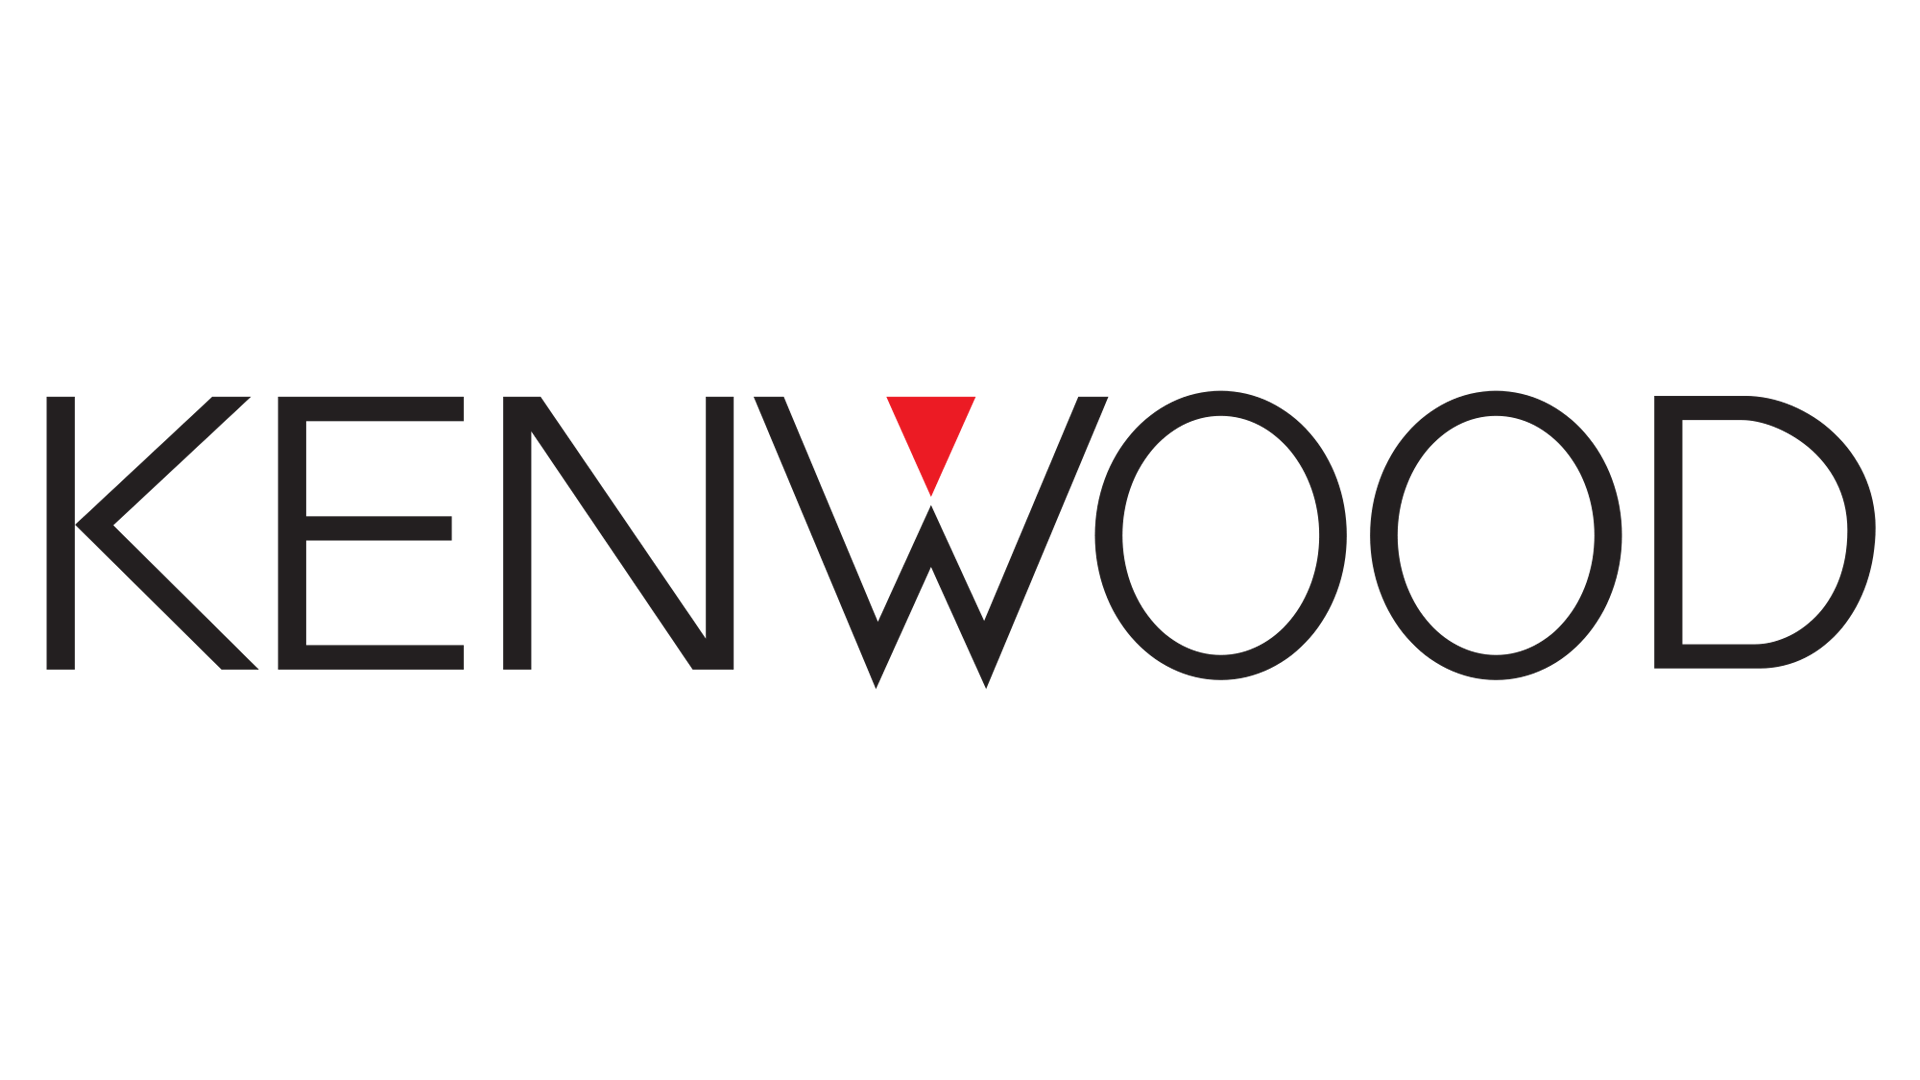 Kenwood Logo - Kenwood Logo, Kenwood Symbol, Meaning, History and Evolution